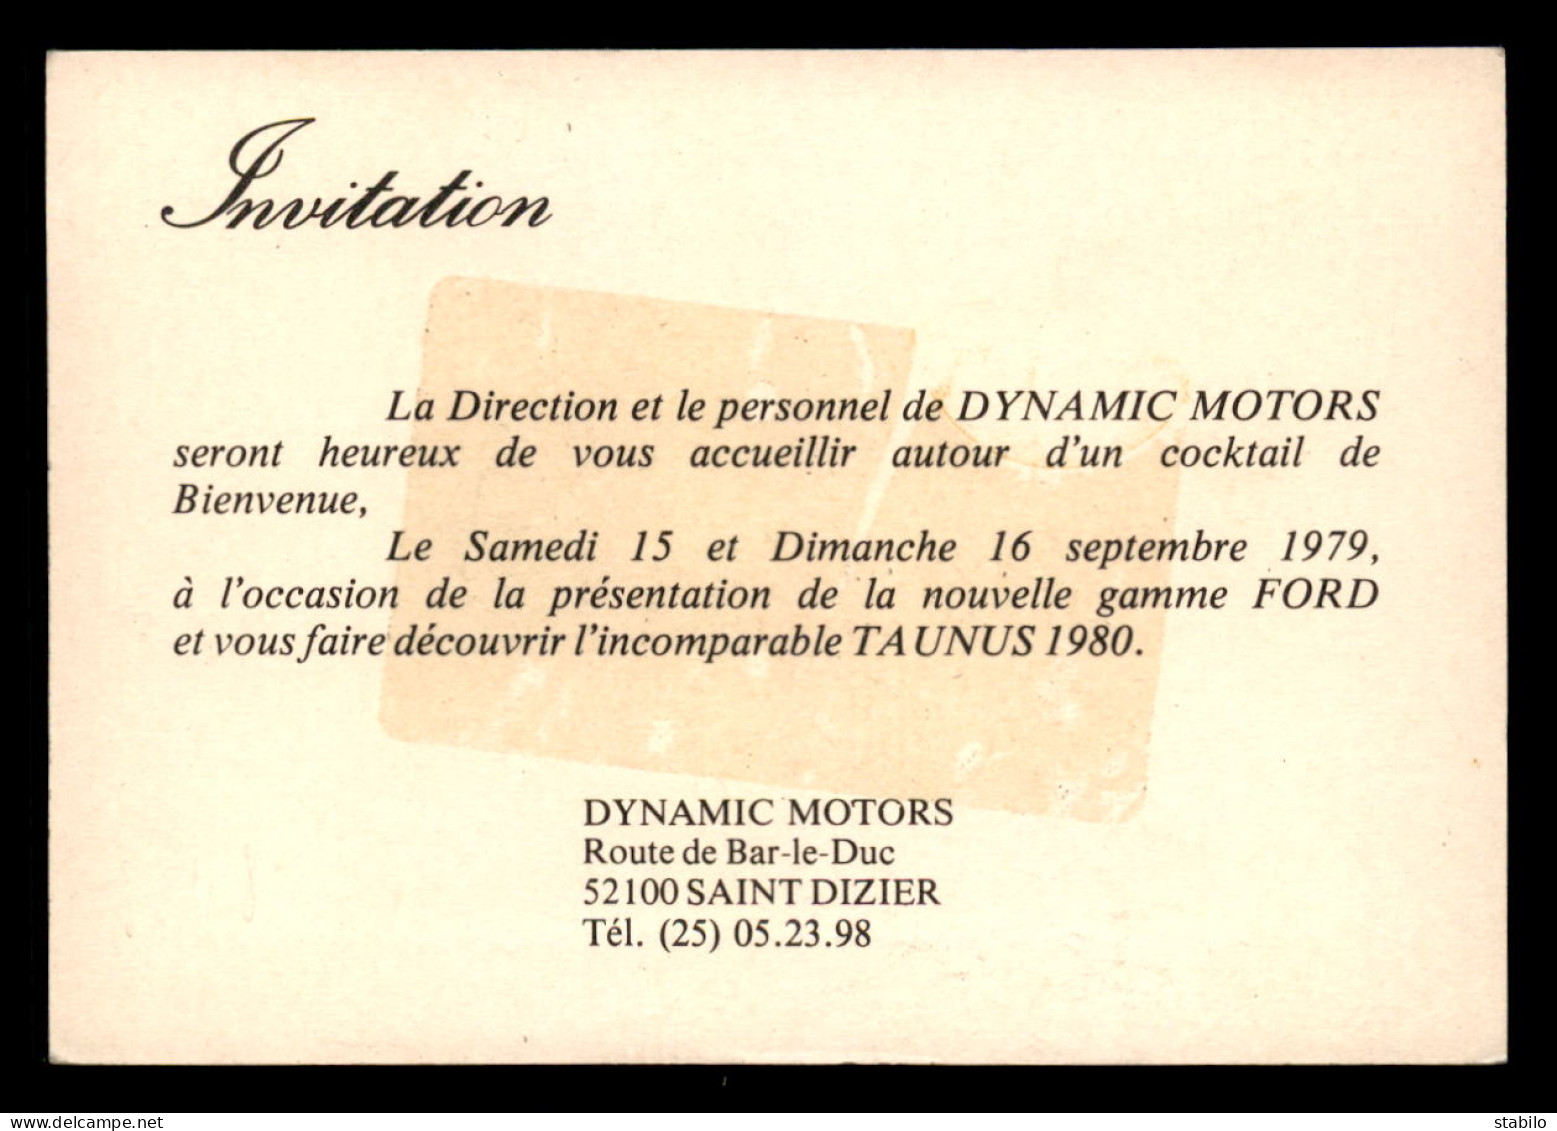 AUTOMOBILES - FORD TAUNUS 1980 - INVITATION DYNAMIC MOTORS SAINT-DIZIER - Voitures De Tourisme